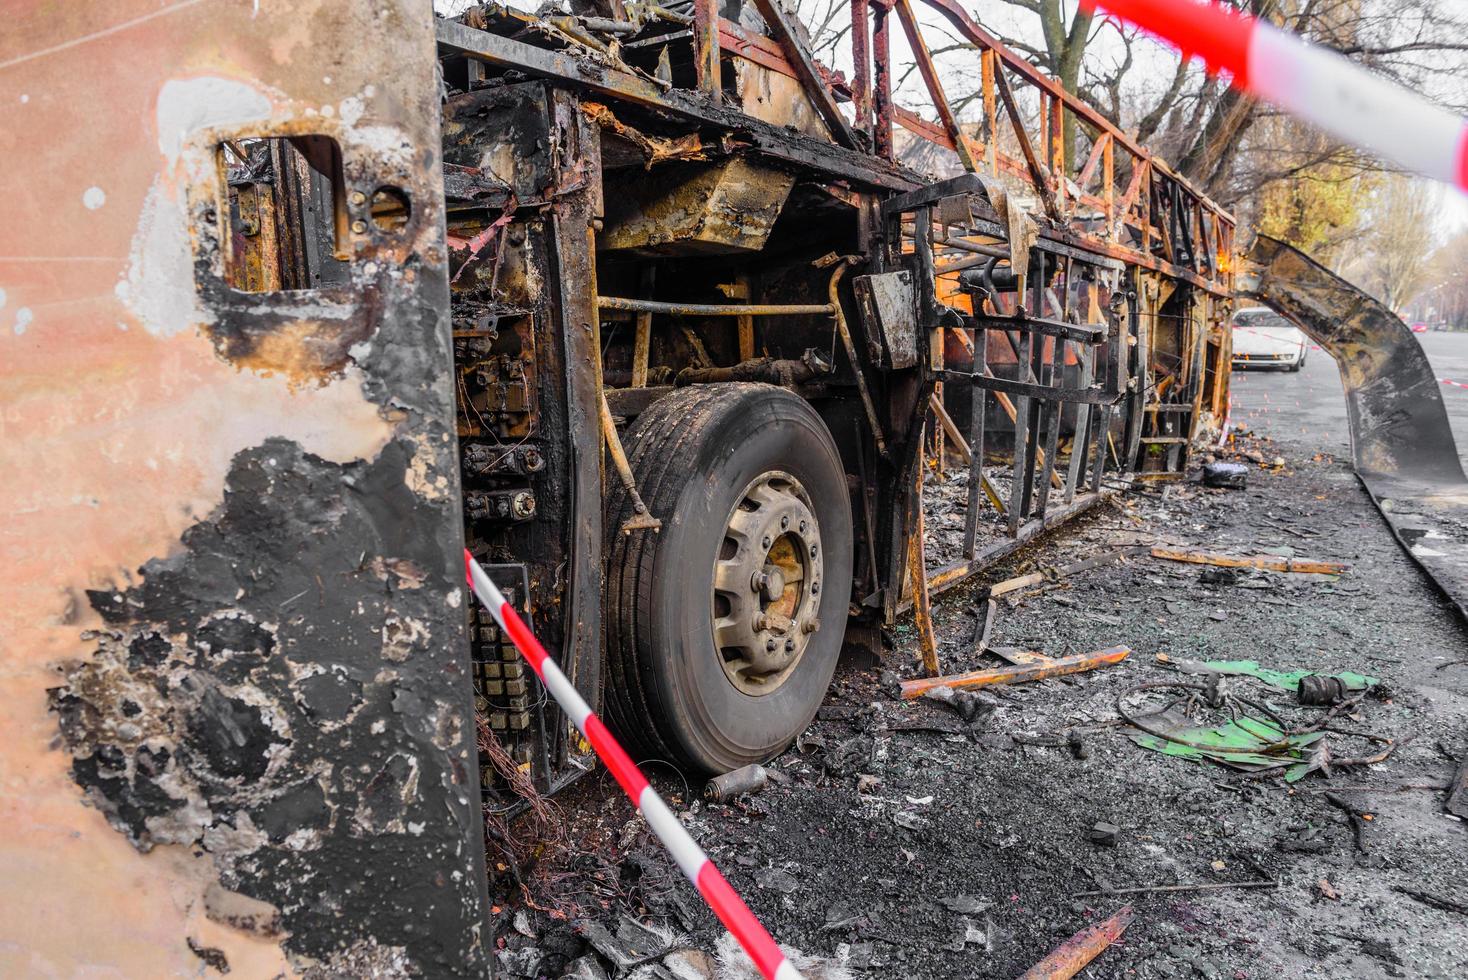 un bus brûlé est vu dans la rue après avoir pris feu pendant un voyage, après un incendie photo